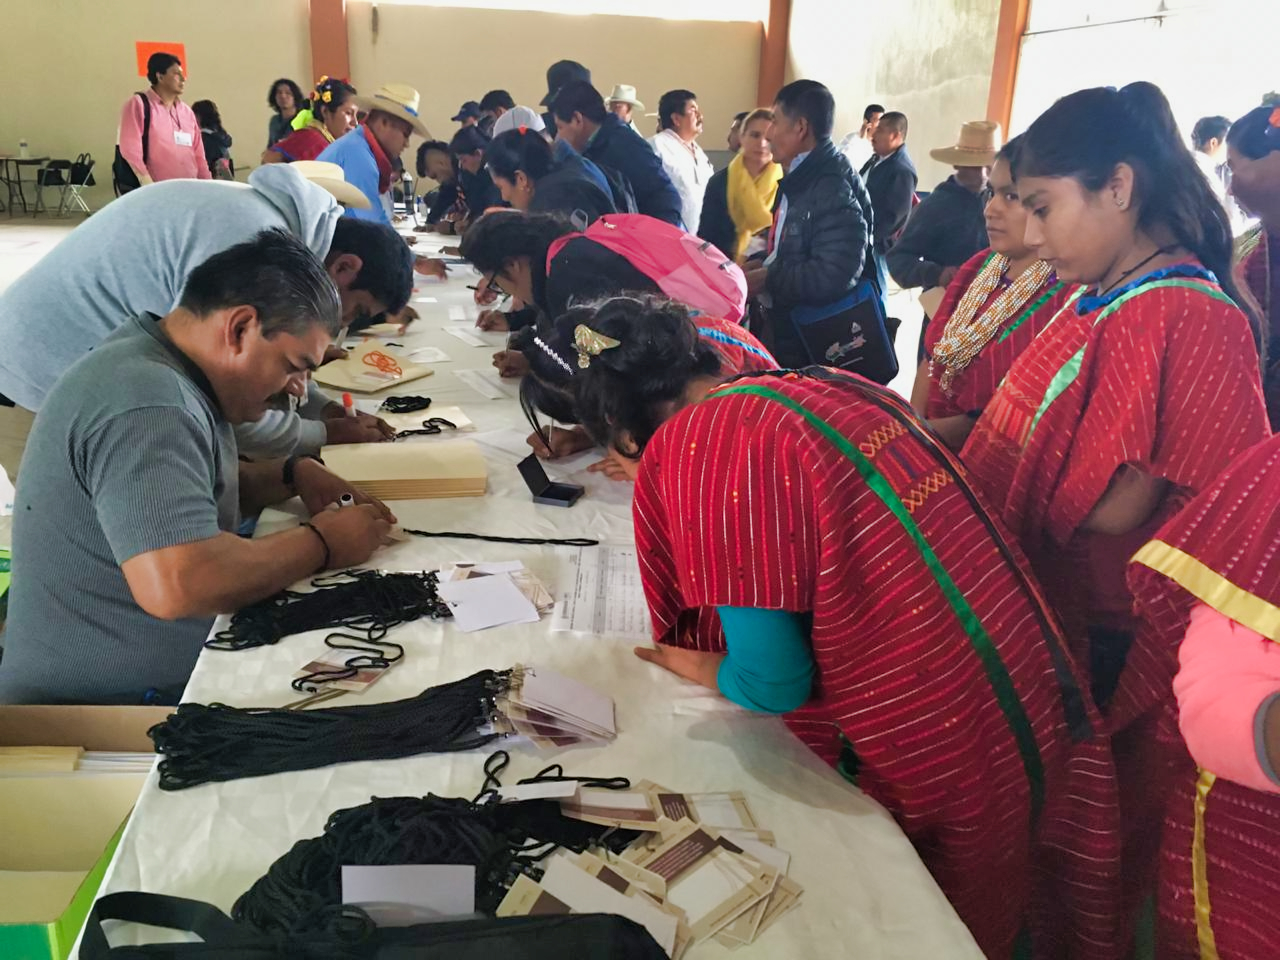 Más de dos mil autoridades y representantes indígenas de Oaxaca participan en foro de consulta para reforma constitucional 